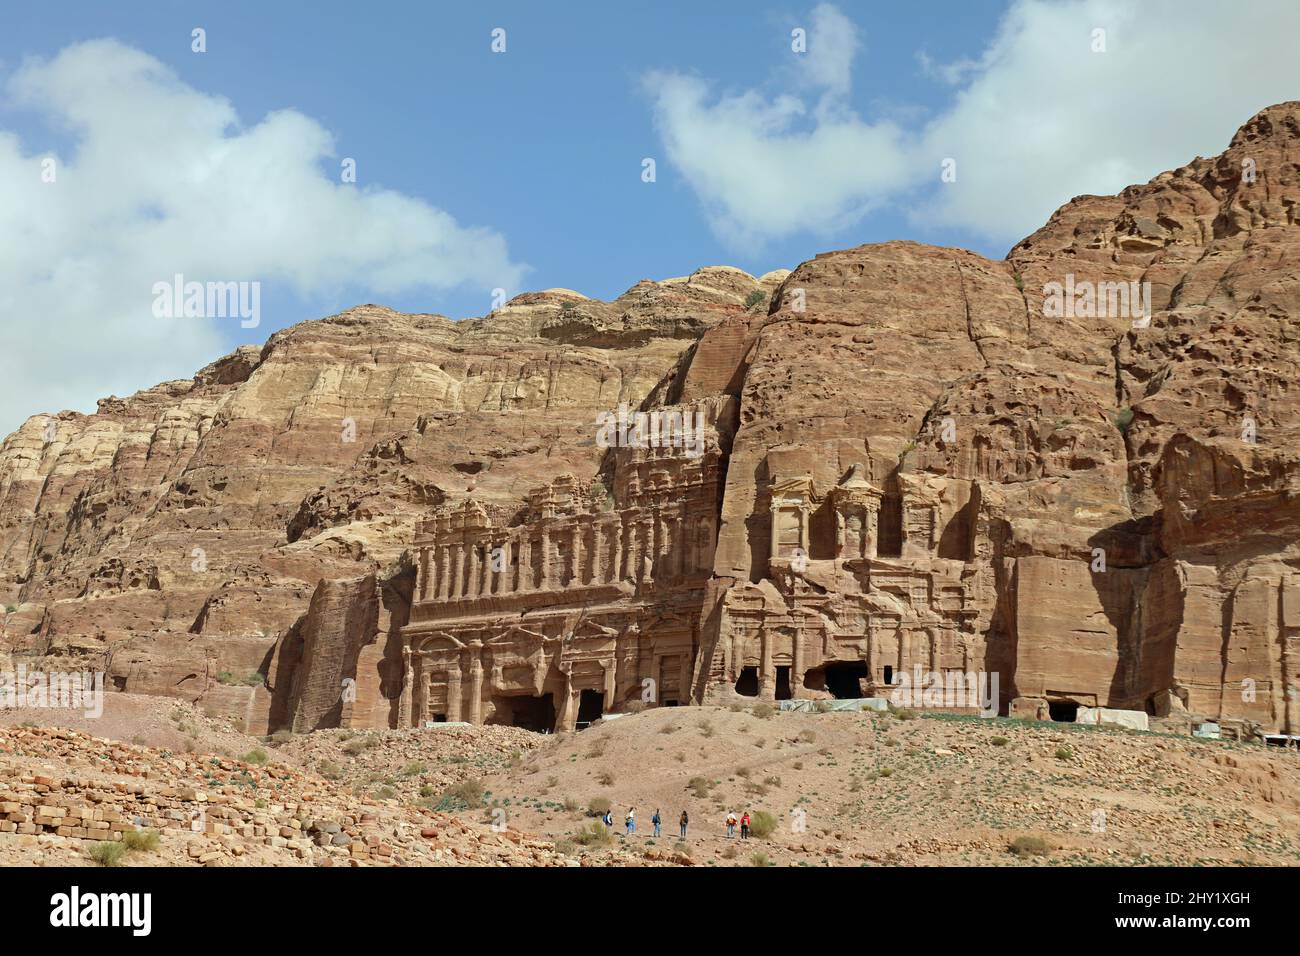 The Royal Tombs at Petra Stock Photo